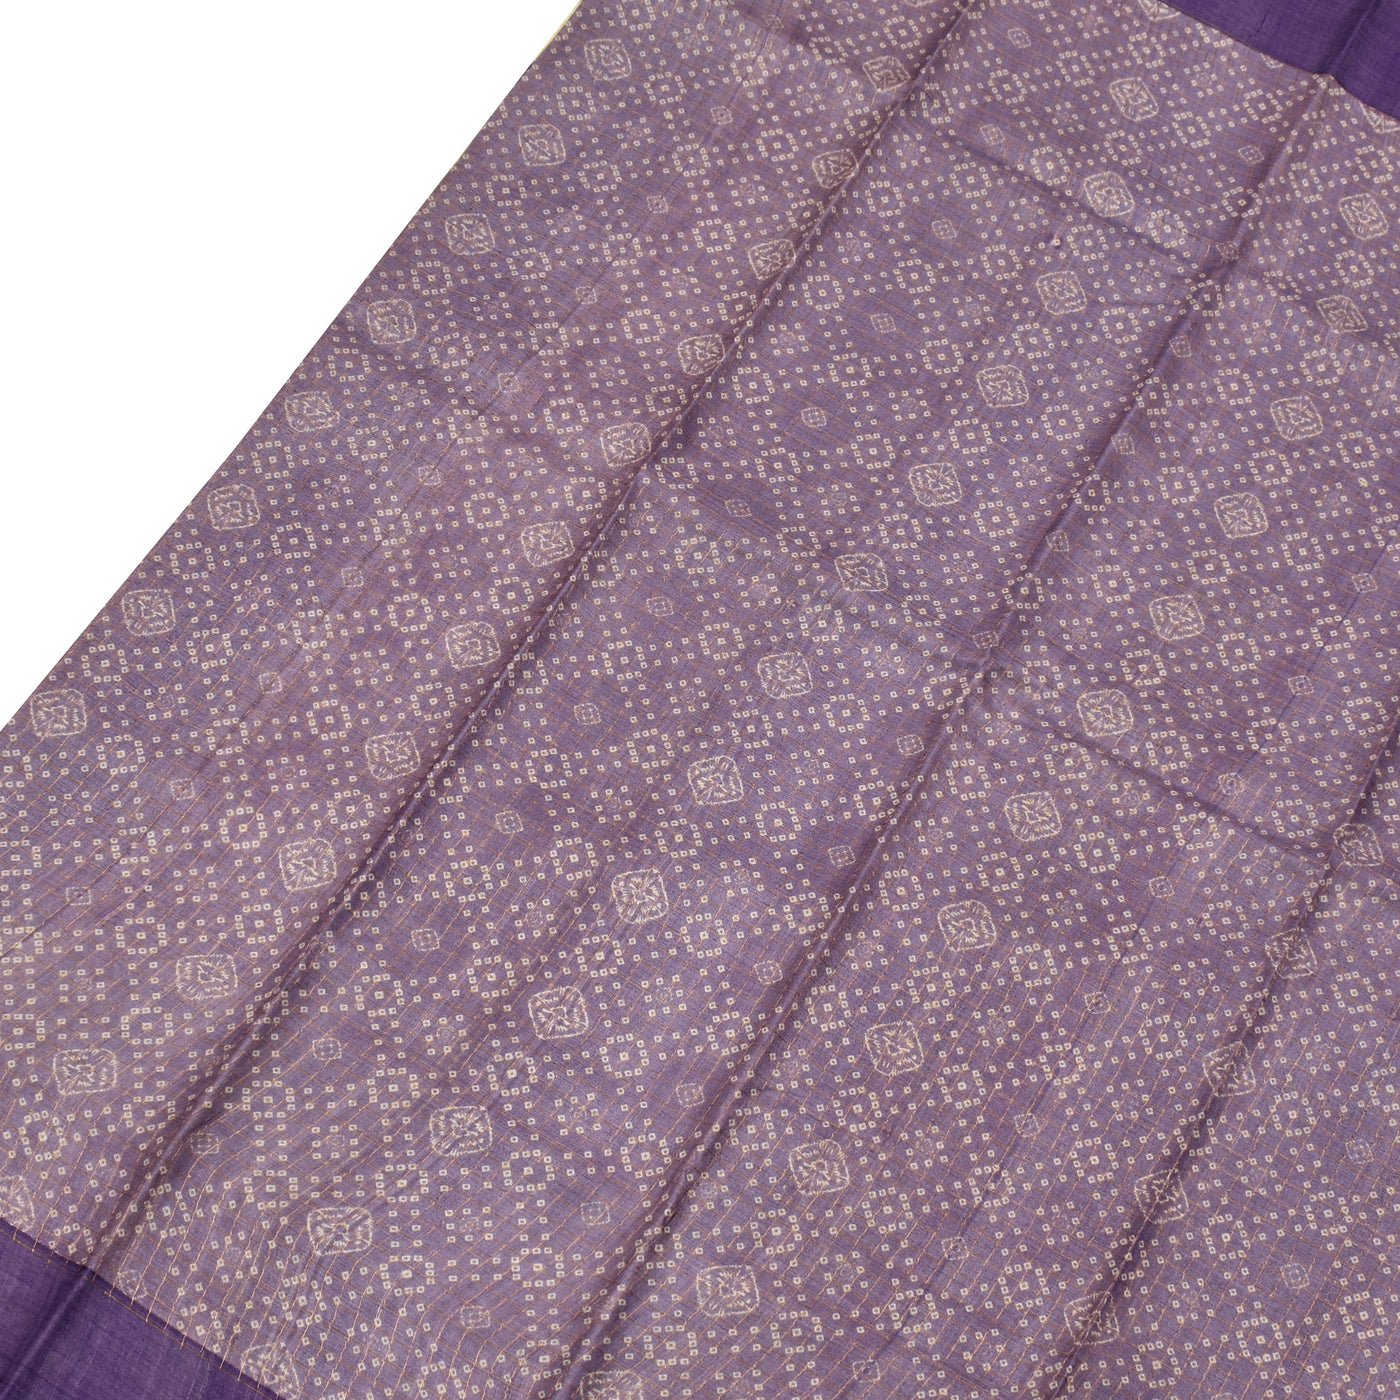 Lavender Tussar Silk Saree with Bhandhini Print Design